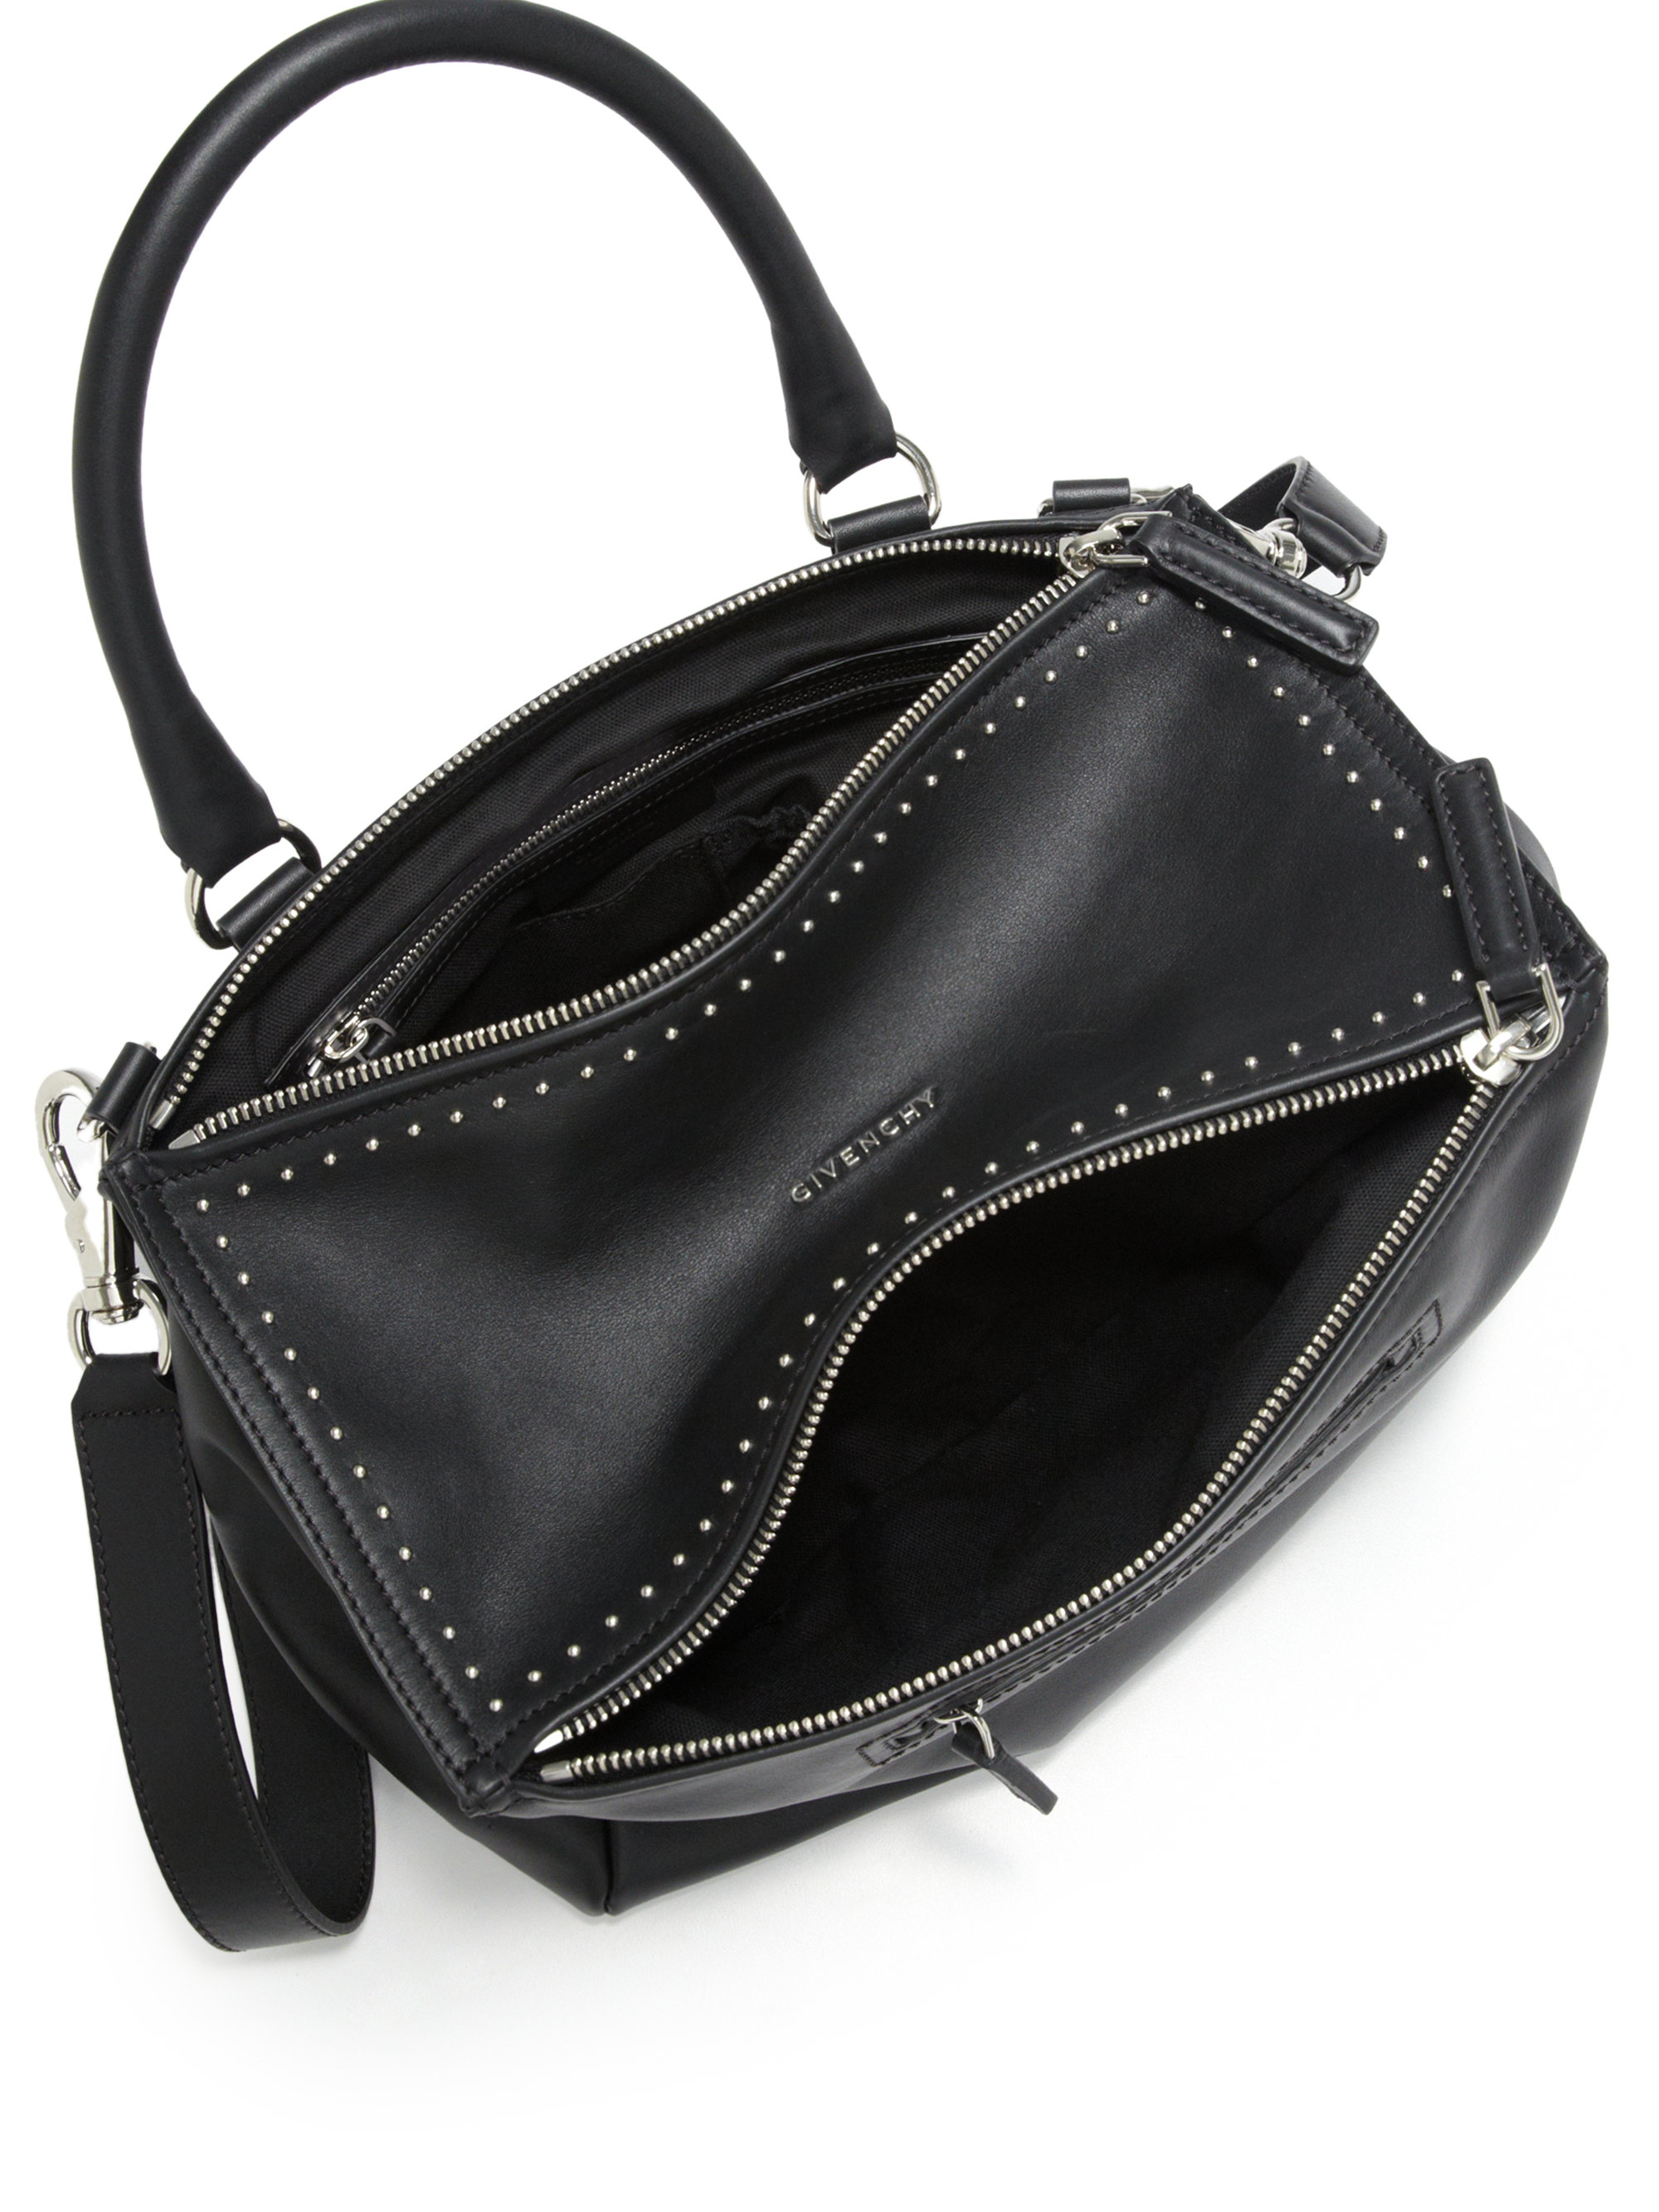 Givenchy Pandora Medium Studded Leather Shoulder Bag in Black - Lyst